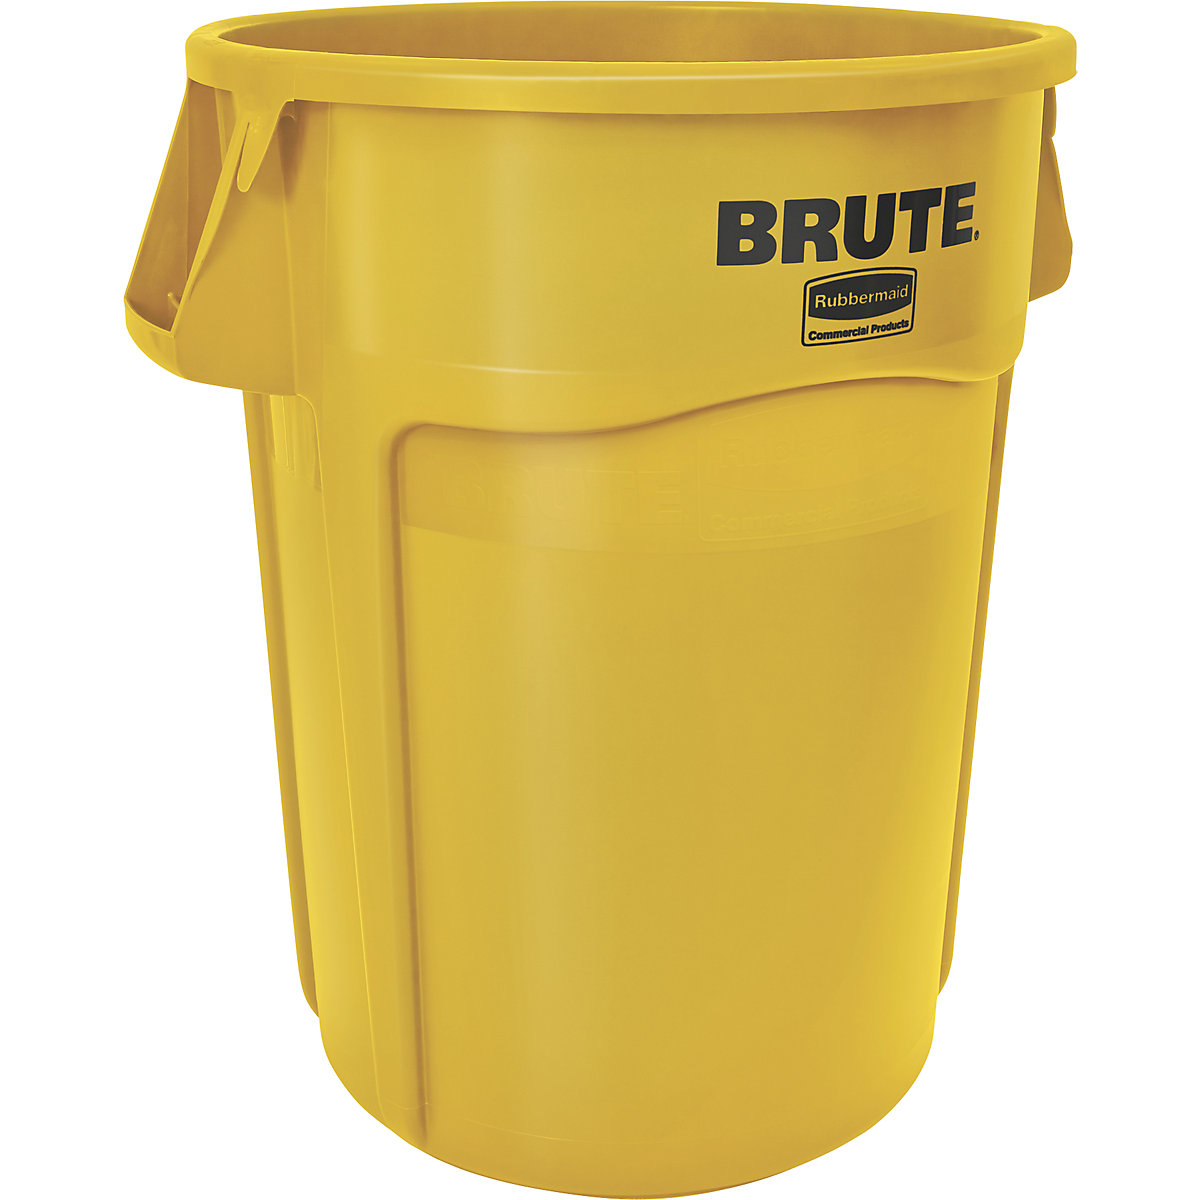 Universalcontainer BRUTE®, rund Rubbermaid, Inhalt 166 l, gelb